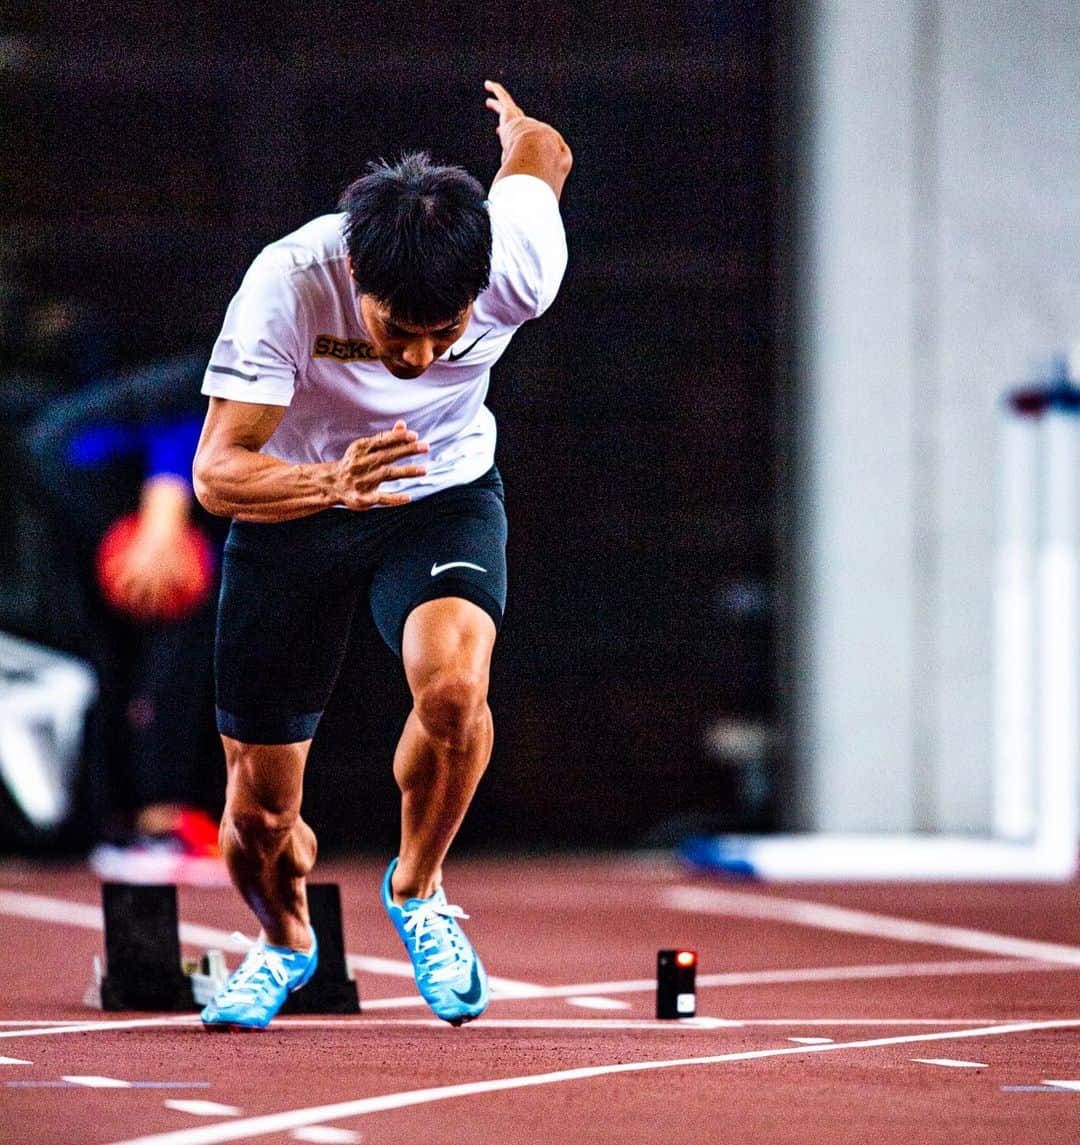 セイコースポーツのインスタグラム：「-Photo by Atsushi Kondo- #山縣亮太  #陸上  #セイコー #TIMEIT #seiko #time #teamseiko #Seiko #nike #陸上  #photooftheday #picoftheday #sports #athletic #run #running #100m #200m #dash #スポーツ #短距離 #training #トレーニング #アスリート #athlete #trackandfield #sprinter #sprinters #スプリンター #筋肉 #muscle」